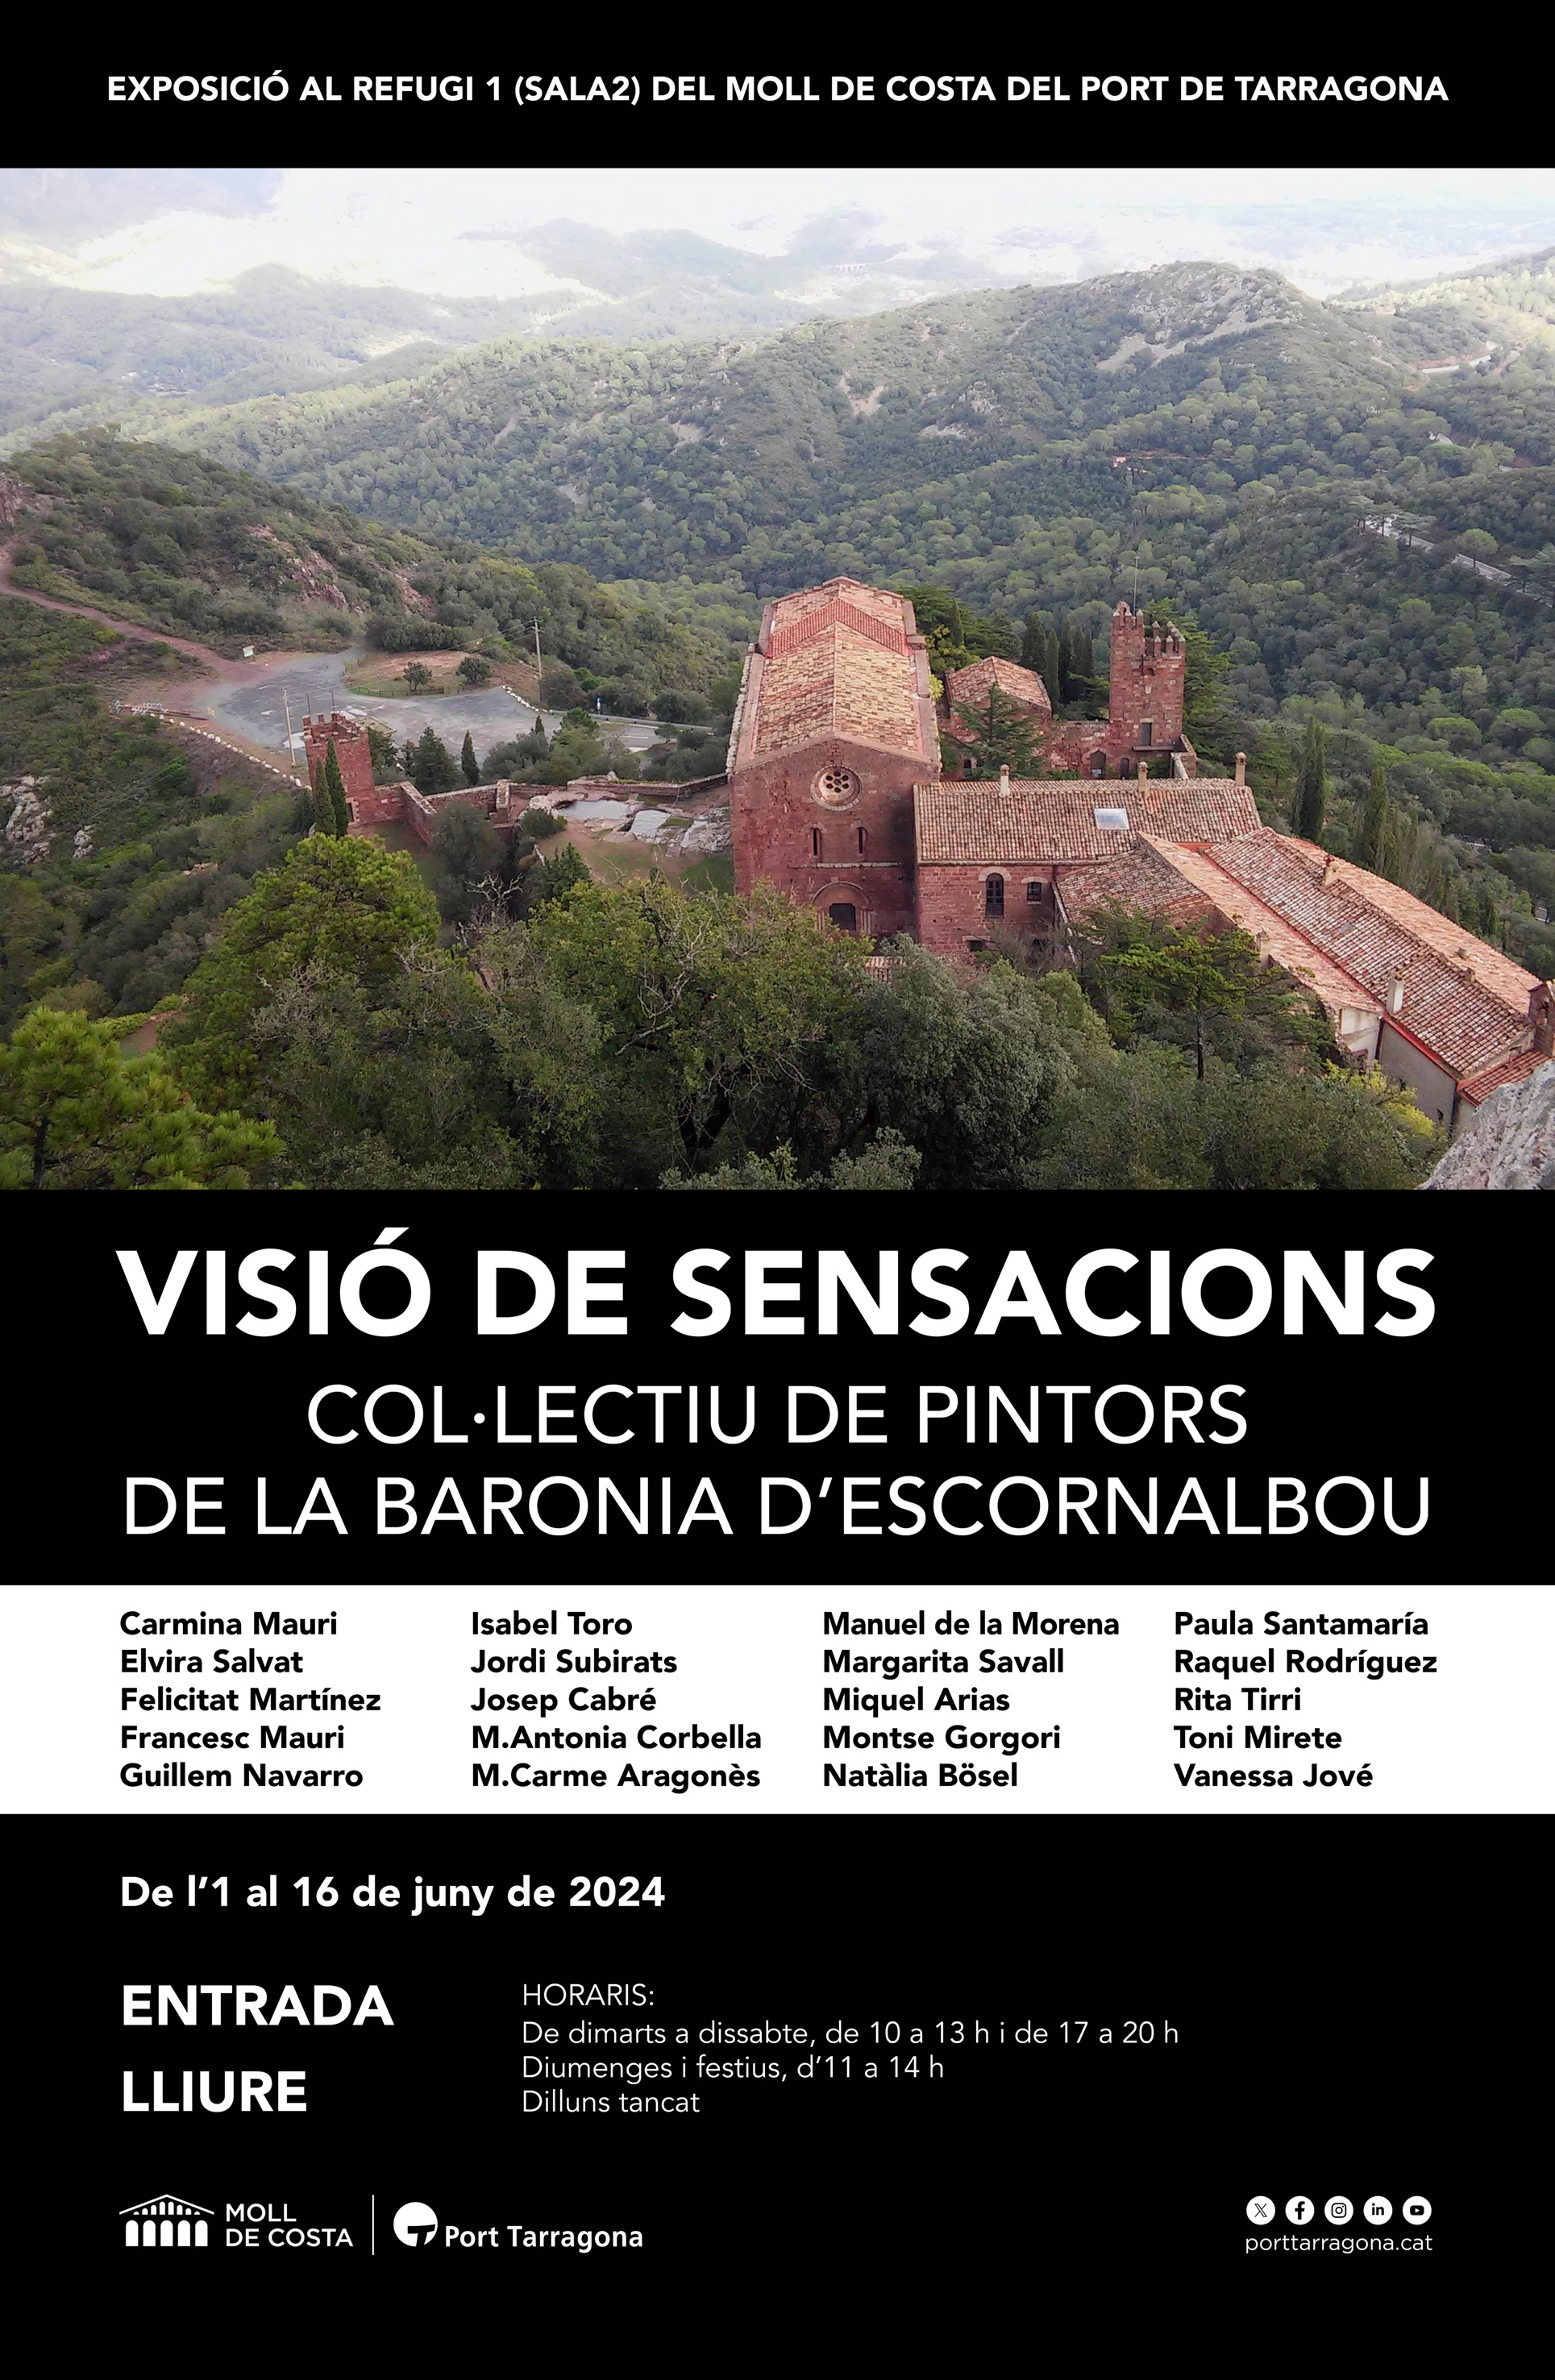 Nova exposició ‘Visió de sensacions’ al Refugi 1 del Moll de Costa del Port de Tarragona